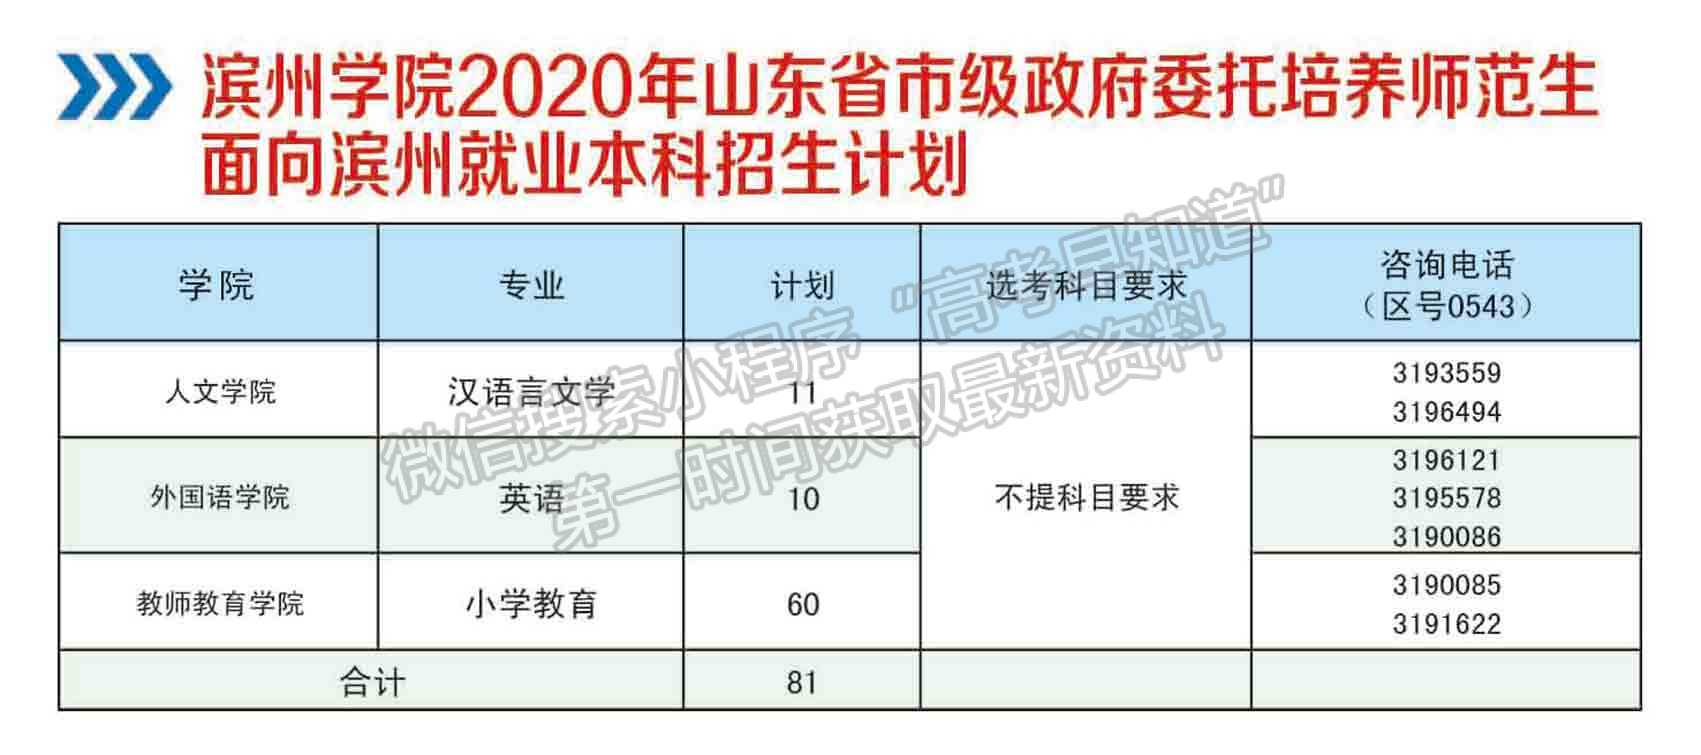 滨州学院2020年招生简章